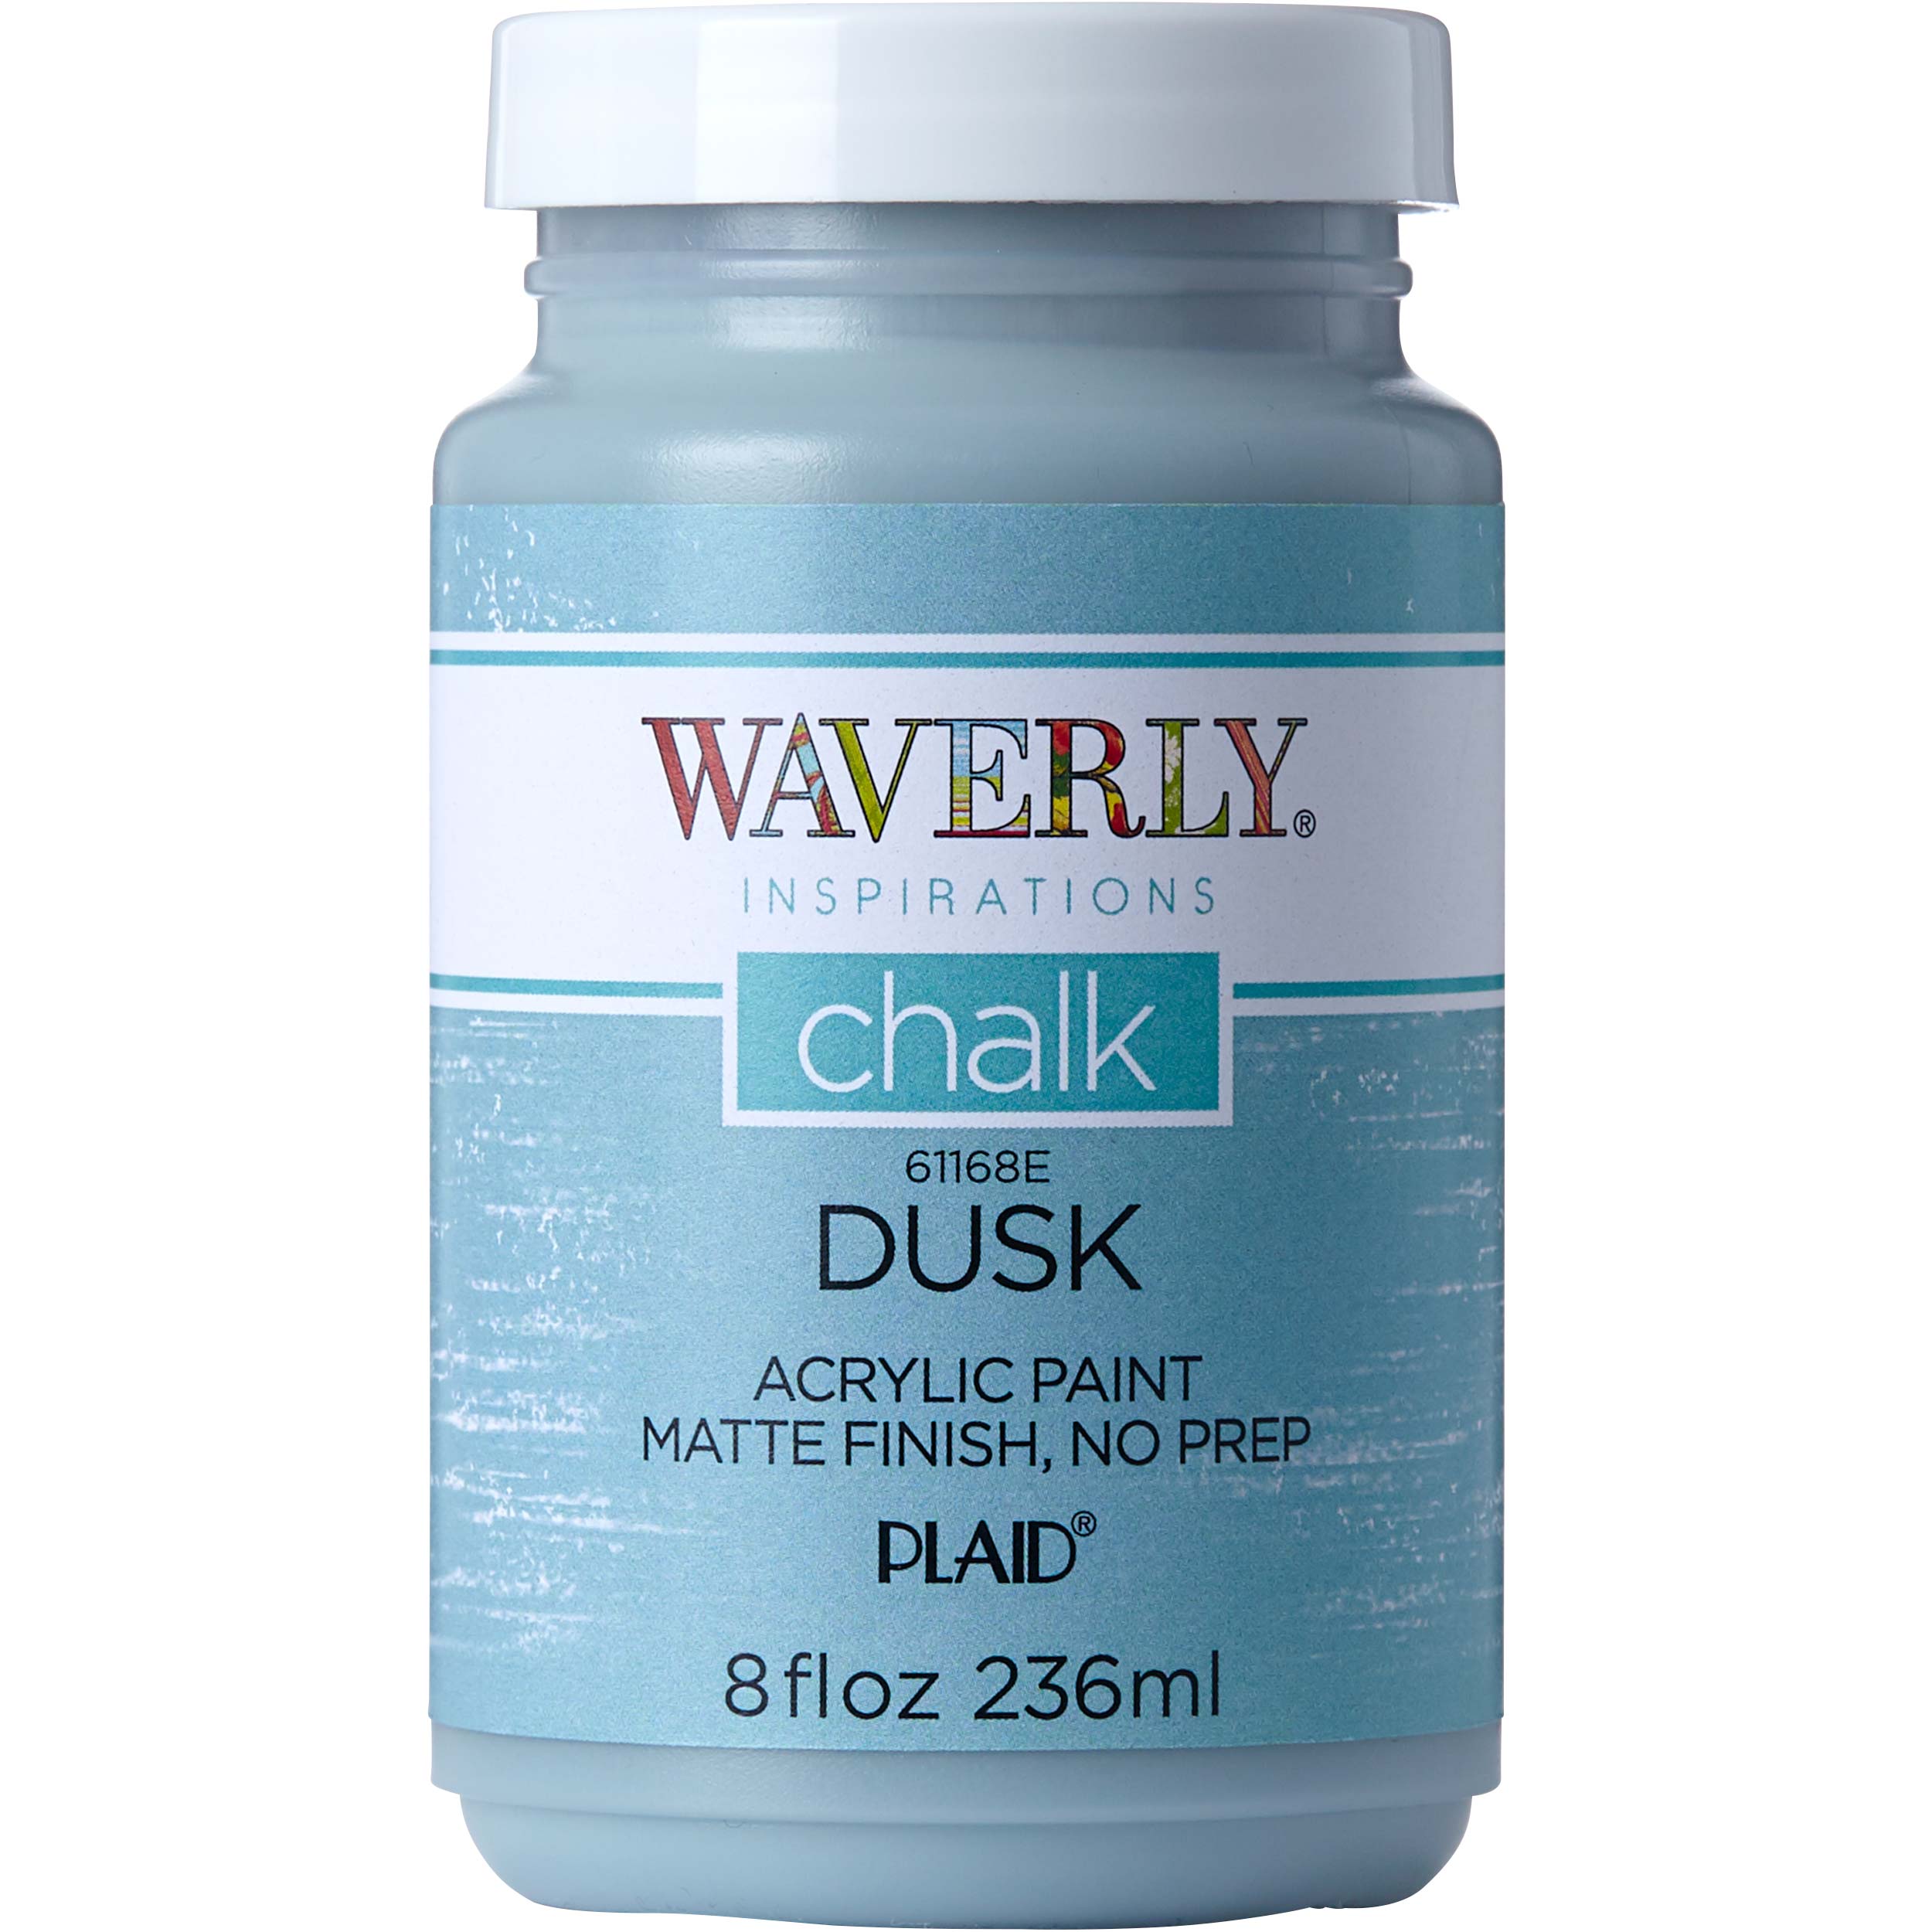 Waverly ® Inspirations Chalk Finish Acrylic Paint - Dusk, 8 oz. - 61168E